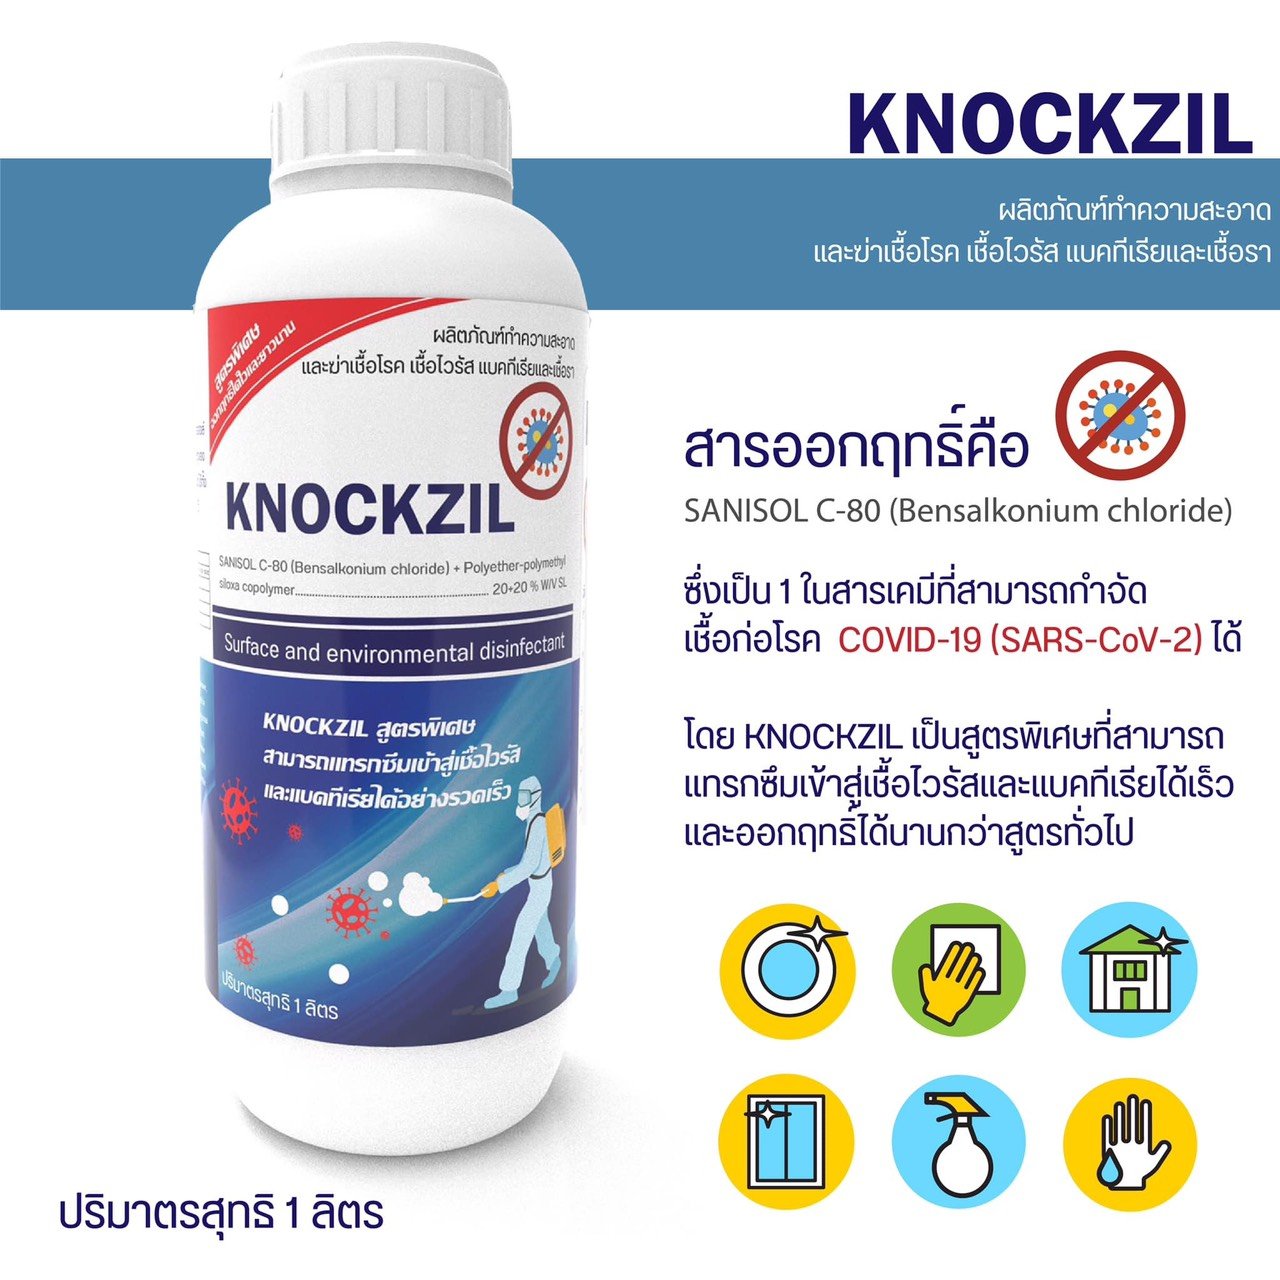 น็อคชิล KNOCKZIL ผลิตภัณฑ์ทำความสะอาด และฆ่าเชื้อโรค เชื้อไวรัส แบคทีเรีย และเชื้อรา